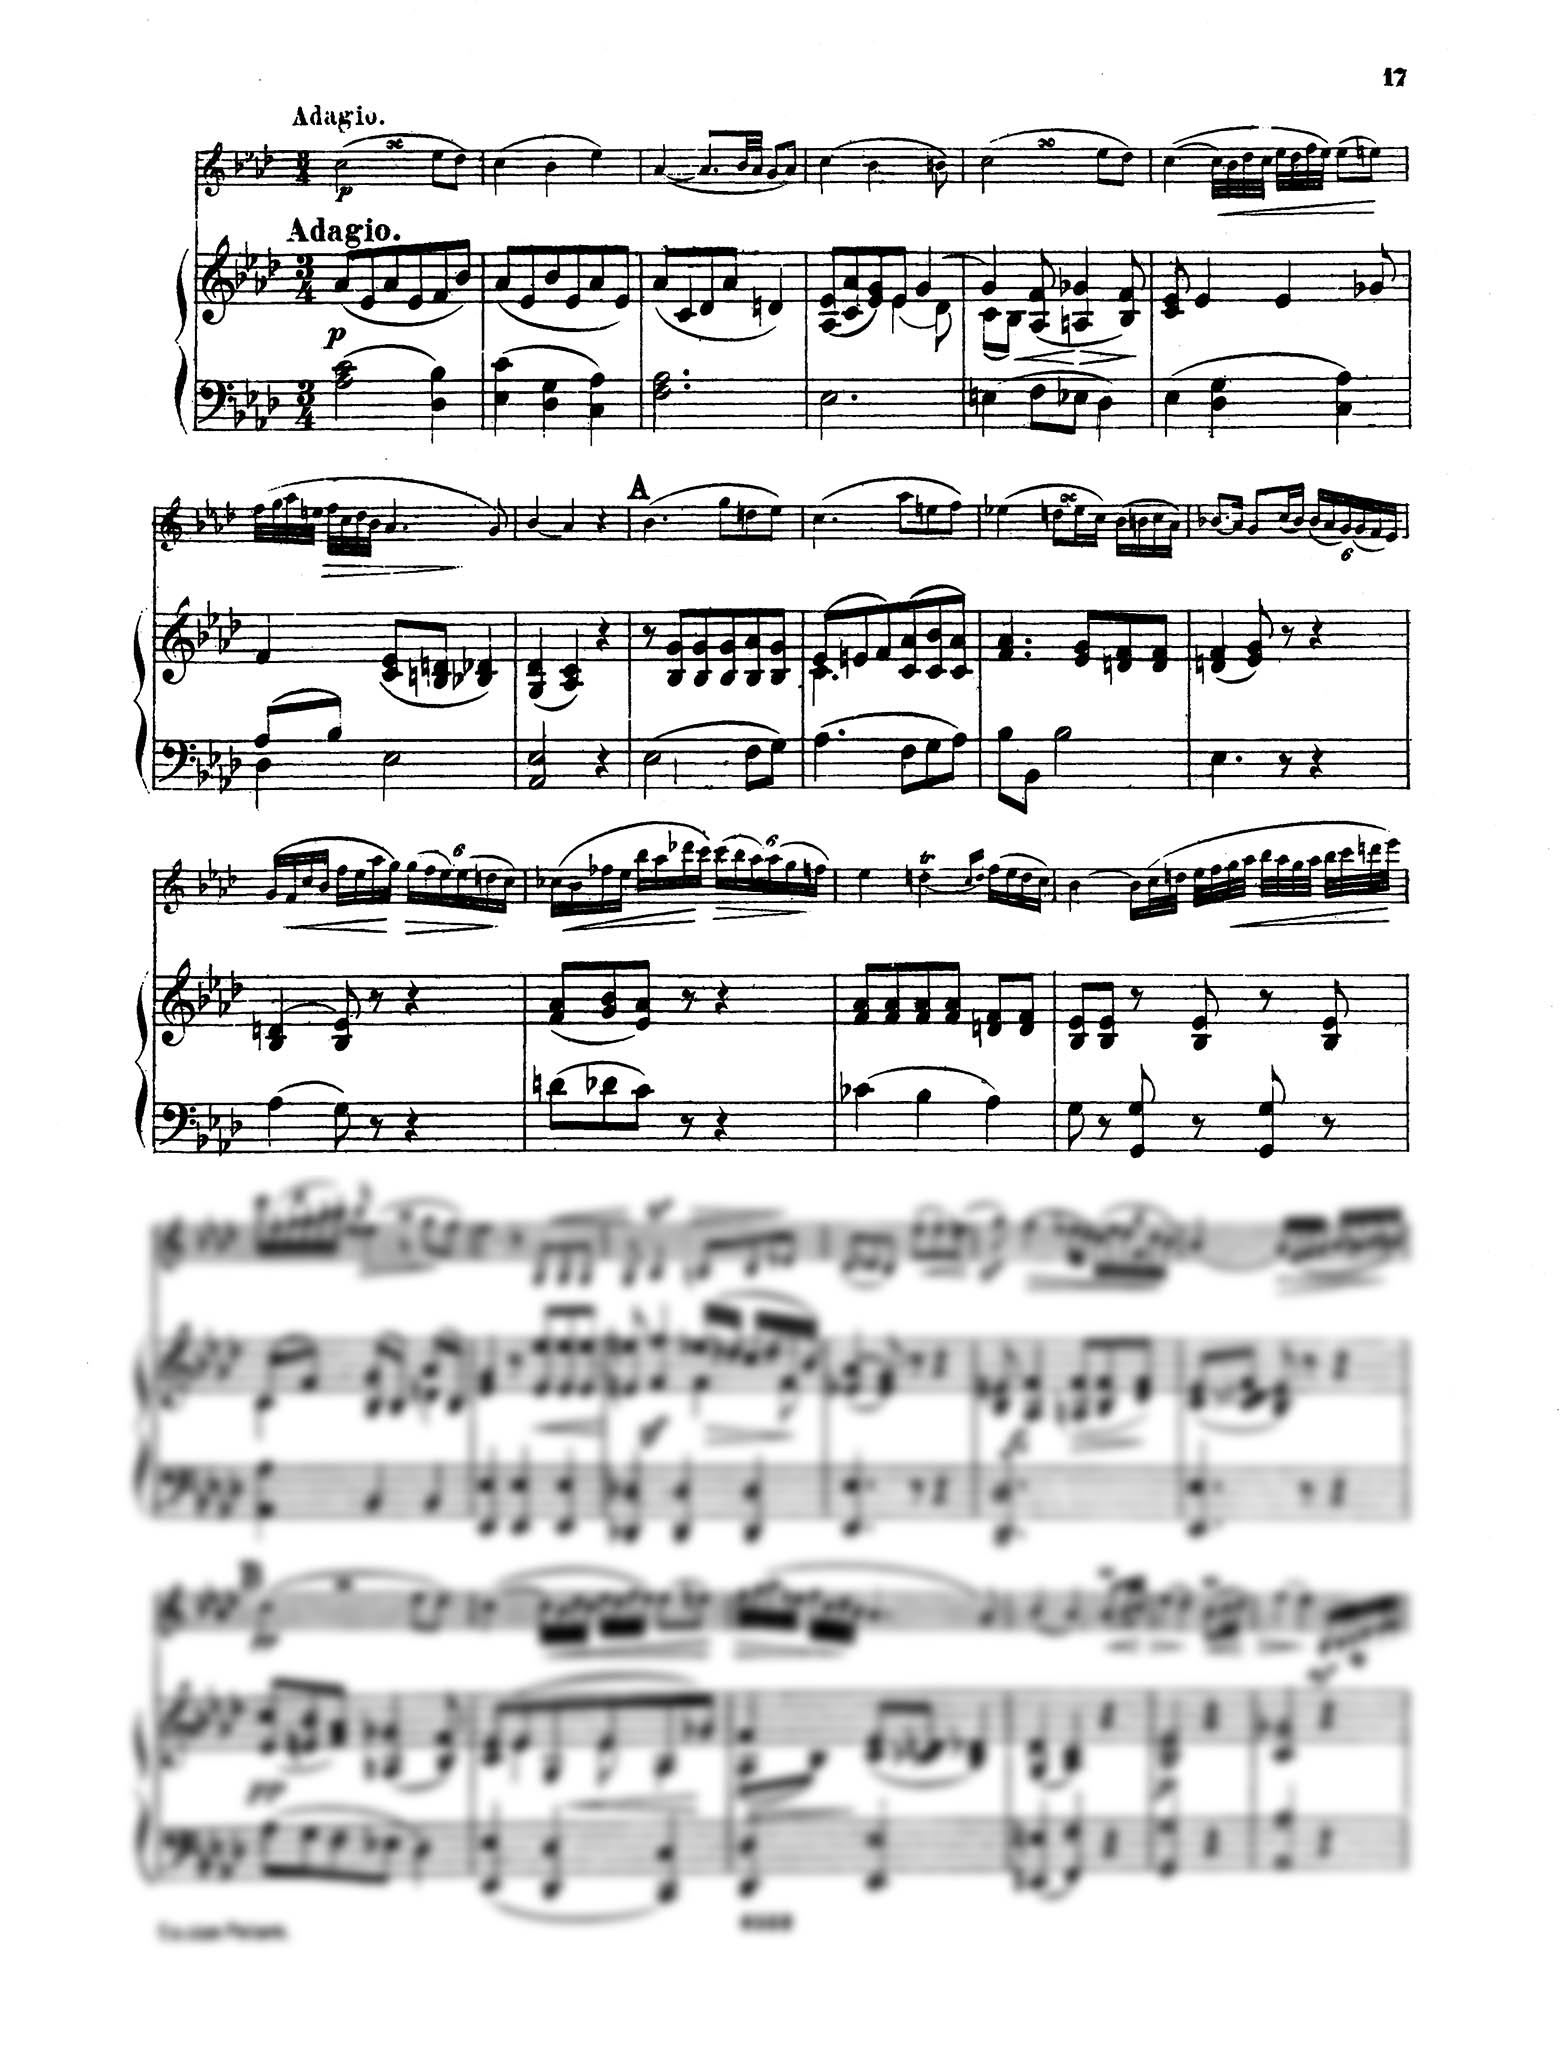 Clarinet Concerto No. 1 in C Minor, Op. 26 - Movement 2